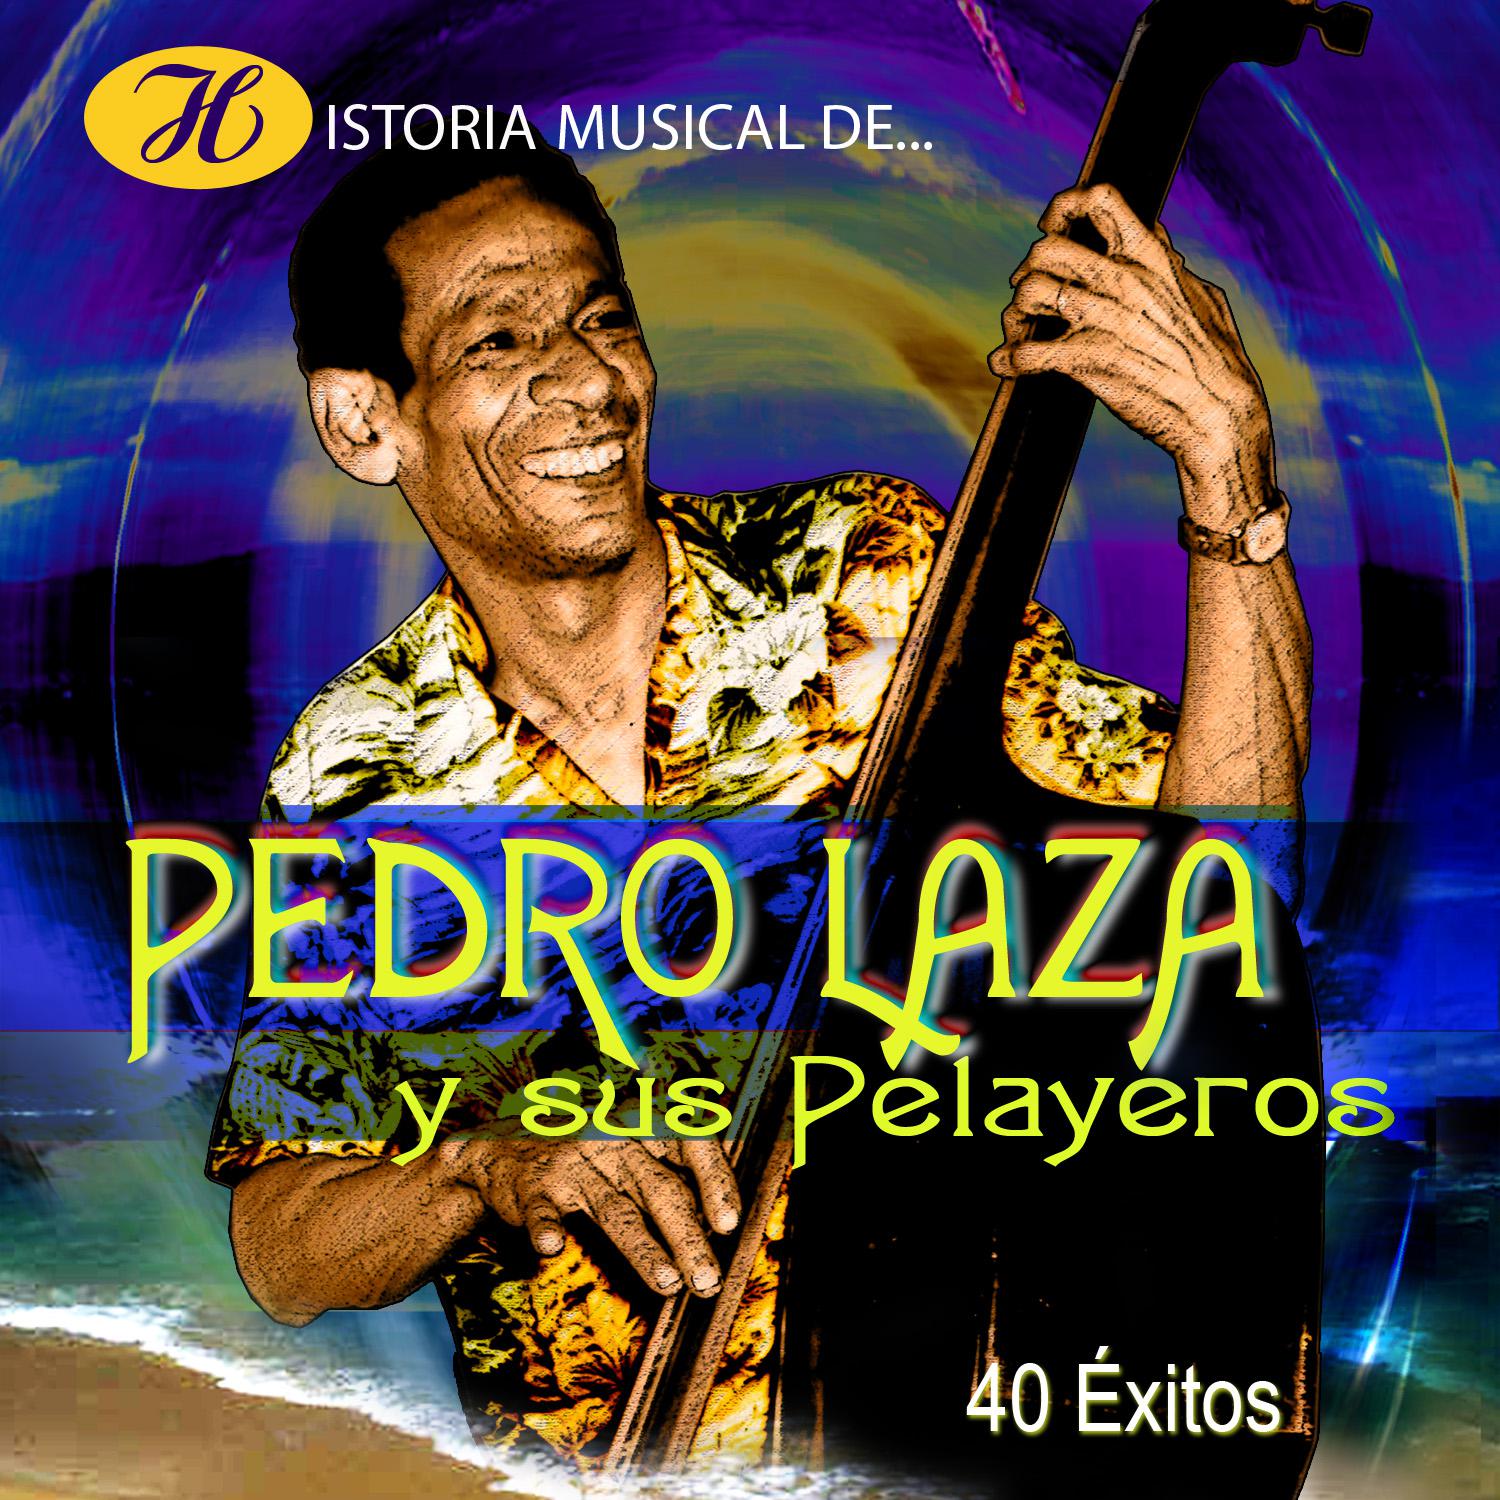 Historia Musical de Pedro Laza y Sus Pelayeros: 40 É xitos